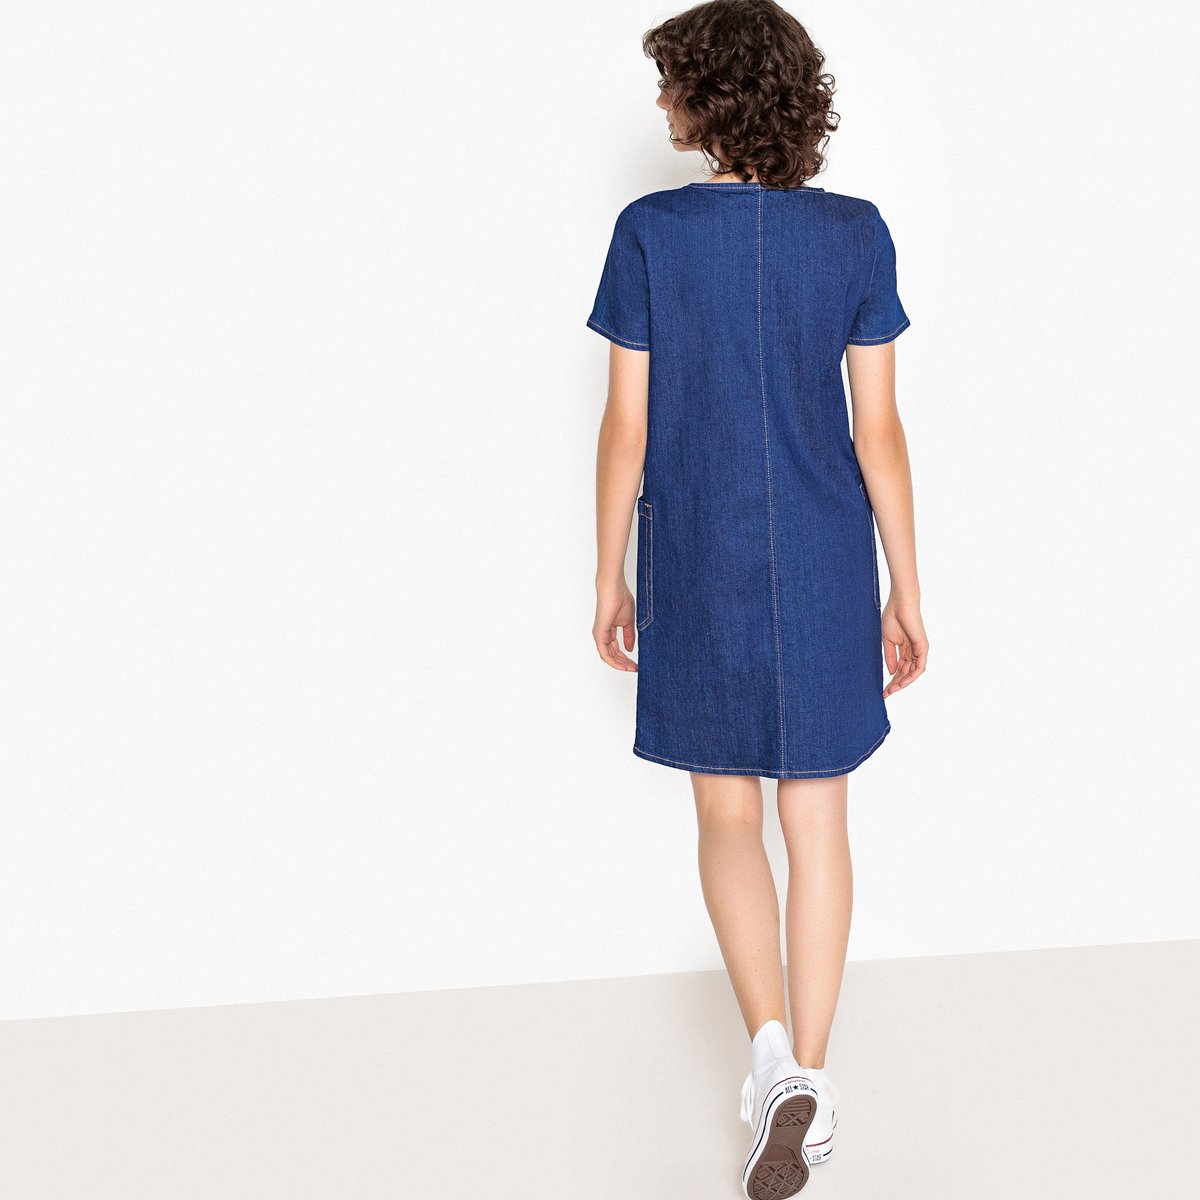 Платье La Redoute Прямое с круглым вырезом и короткими рукавами из джинсовой ткани 34 (FR) - 40 (RUS) синий, размер 34 (FR) - 40 (RUS) Прямое с круглым вырезом и короткими рукавами из джинсовой ткани 34 (FR) - 40 (RUS) синий - фото 4